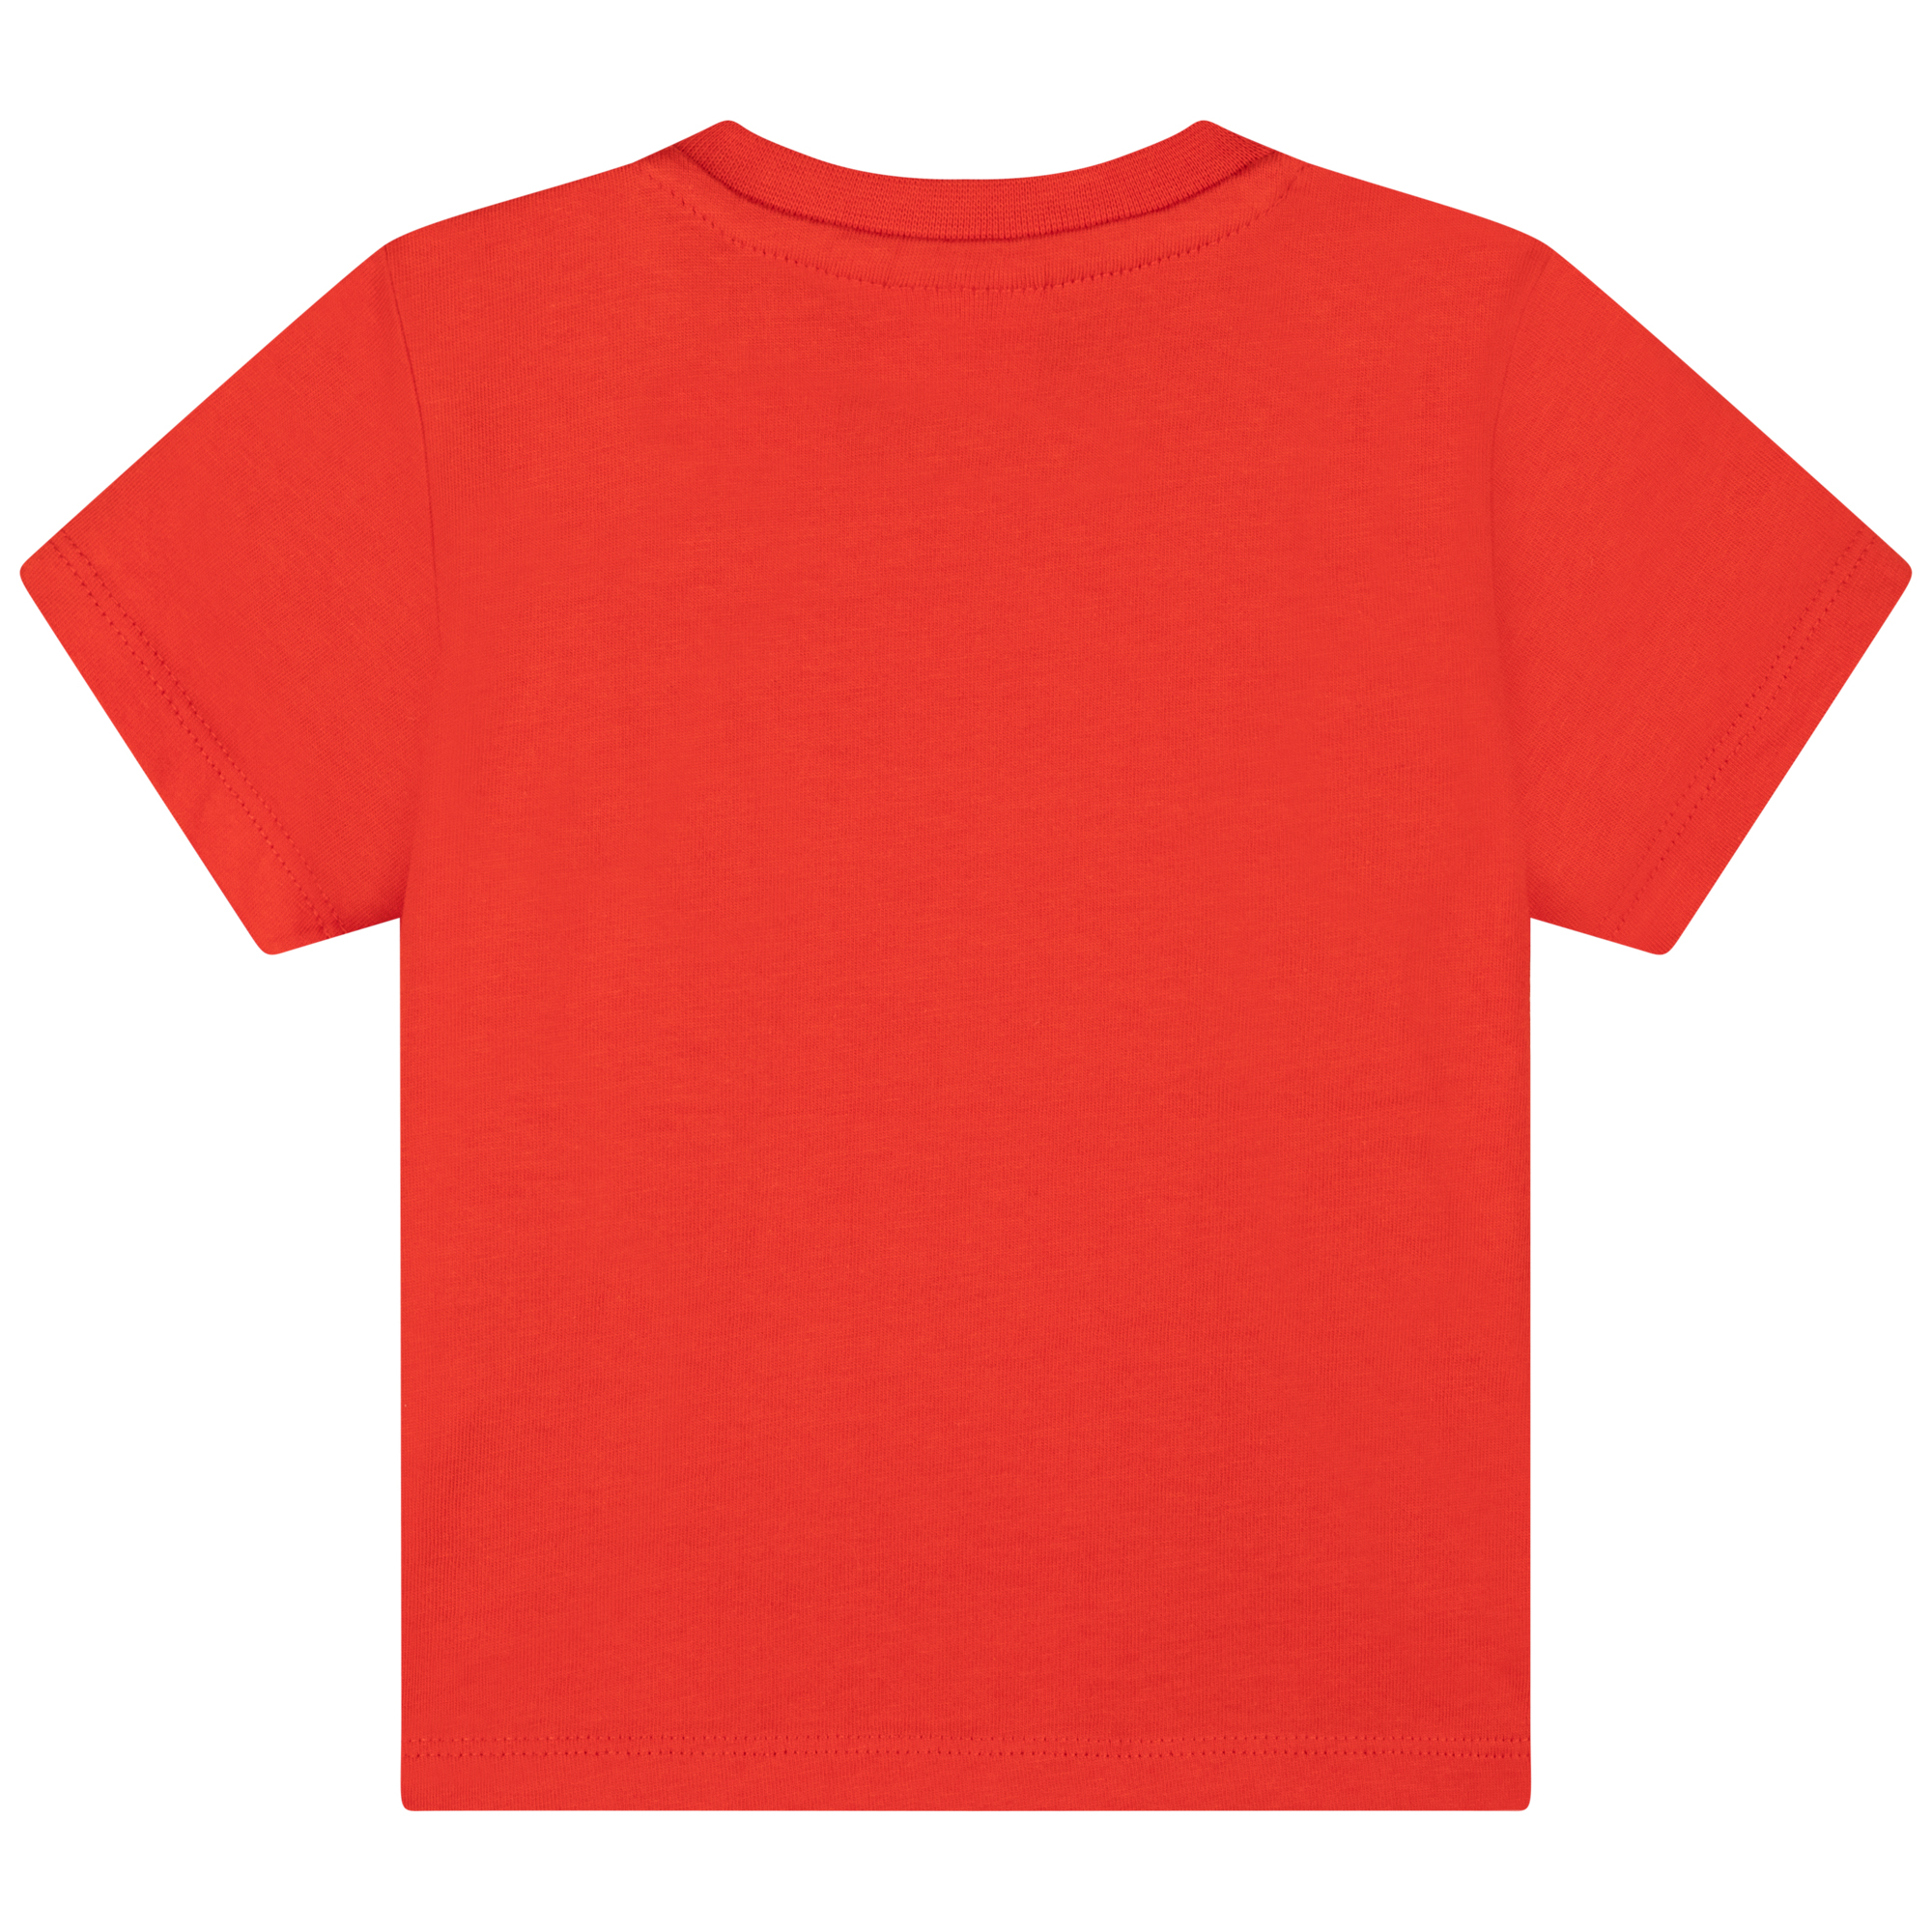 T-shirt van katoenen jersey BOSS Voor